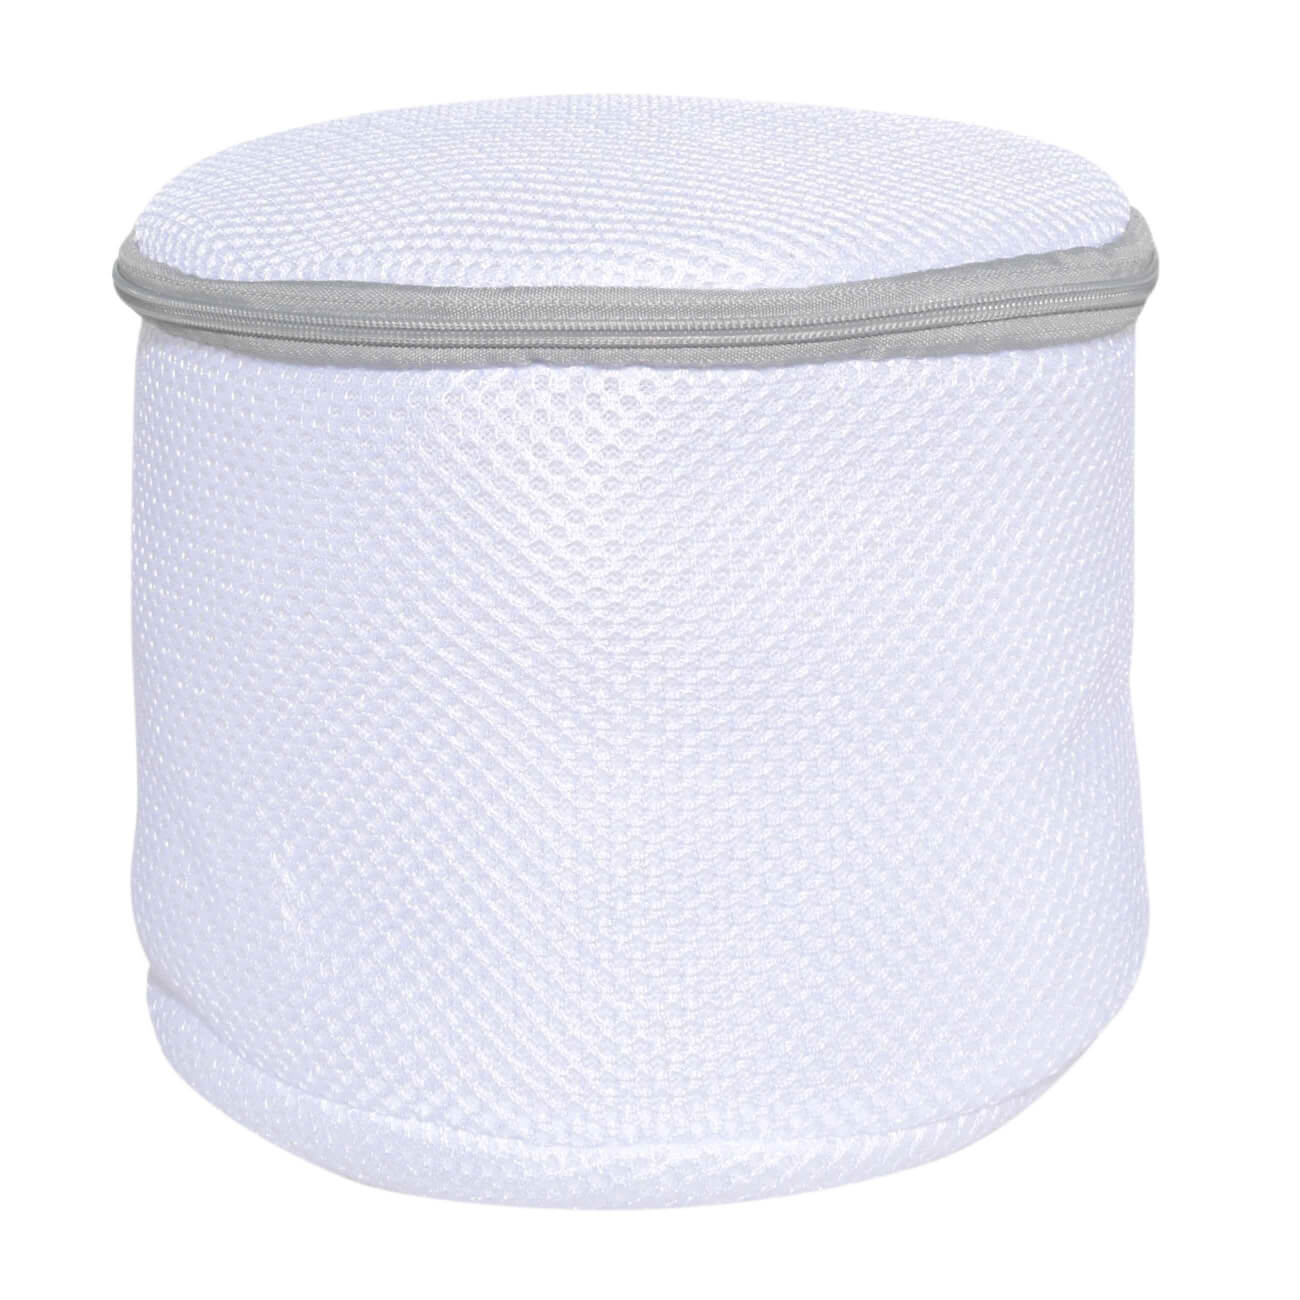 Мешок для стирки бюстгалтеров, 17х15 см, с защитой, полиэстер, бело-серый, Safety мешок для стирки носков и колготок 22х33 см полиэстер бело серый safety plus